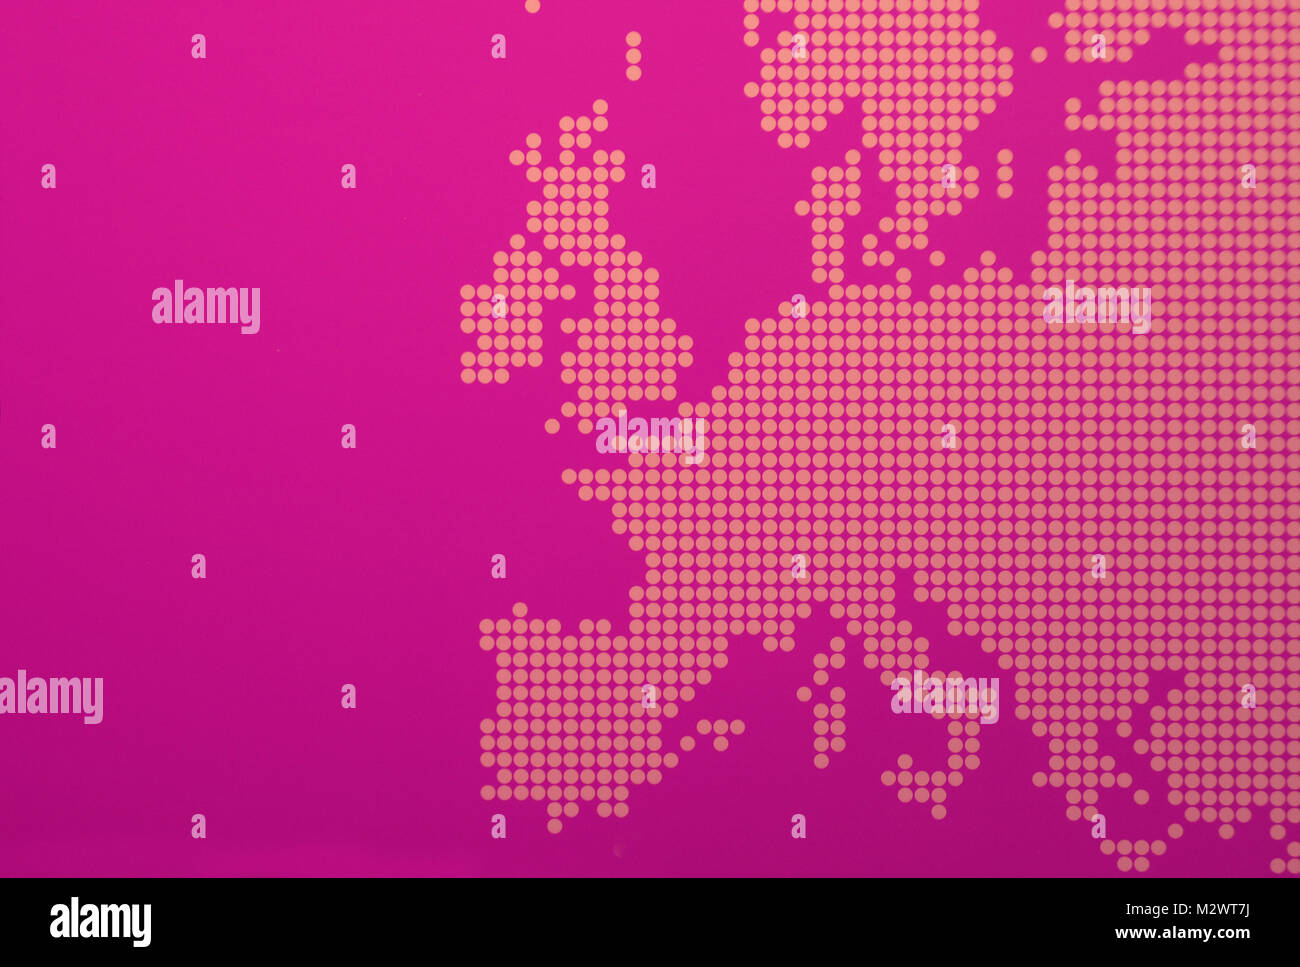 Rappresentazione grafica di Europa - stilizzazione di una mappa europea viola Foto Stock